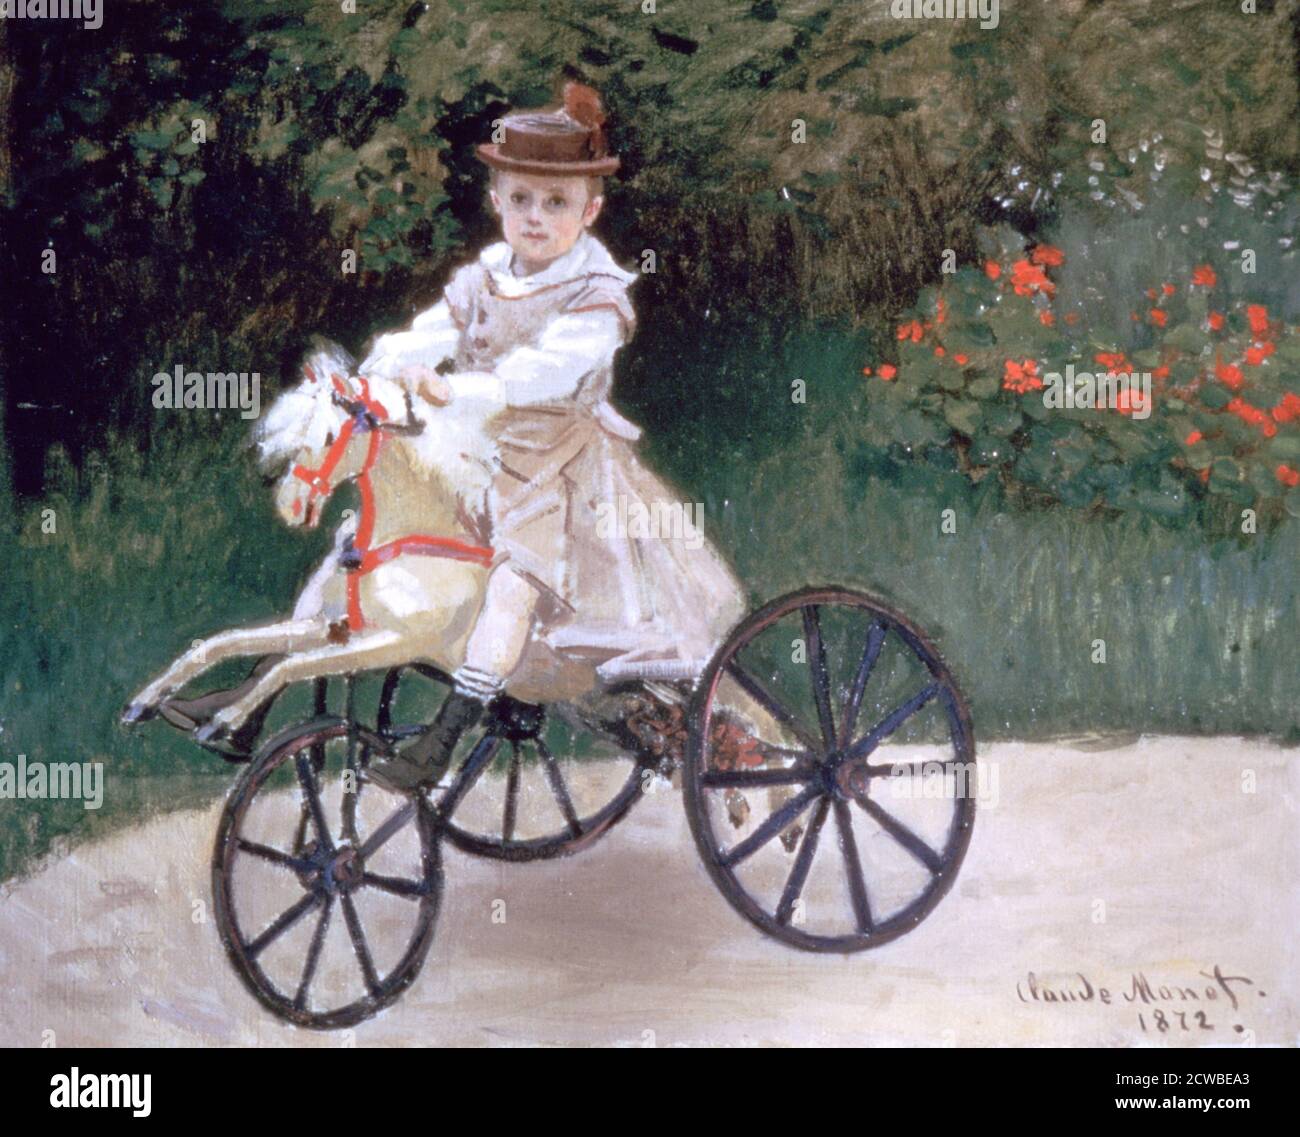 Jean Monet auf einem mechanischen Pferd', 1872. Künstler: Claude Monet. Monet war ein französischer Maler, ein Begründer der französischen Impressionistenmalerei und der konsequenteste und produktivste Praktiker der Bewegungsphilosophie. Stockfoto